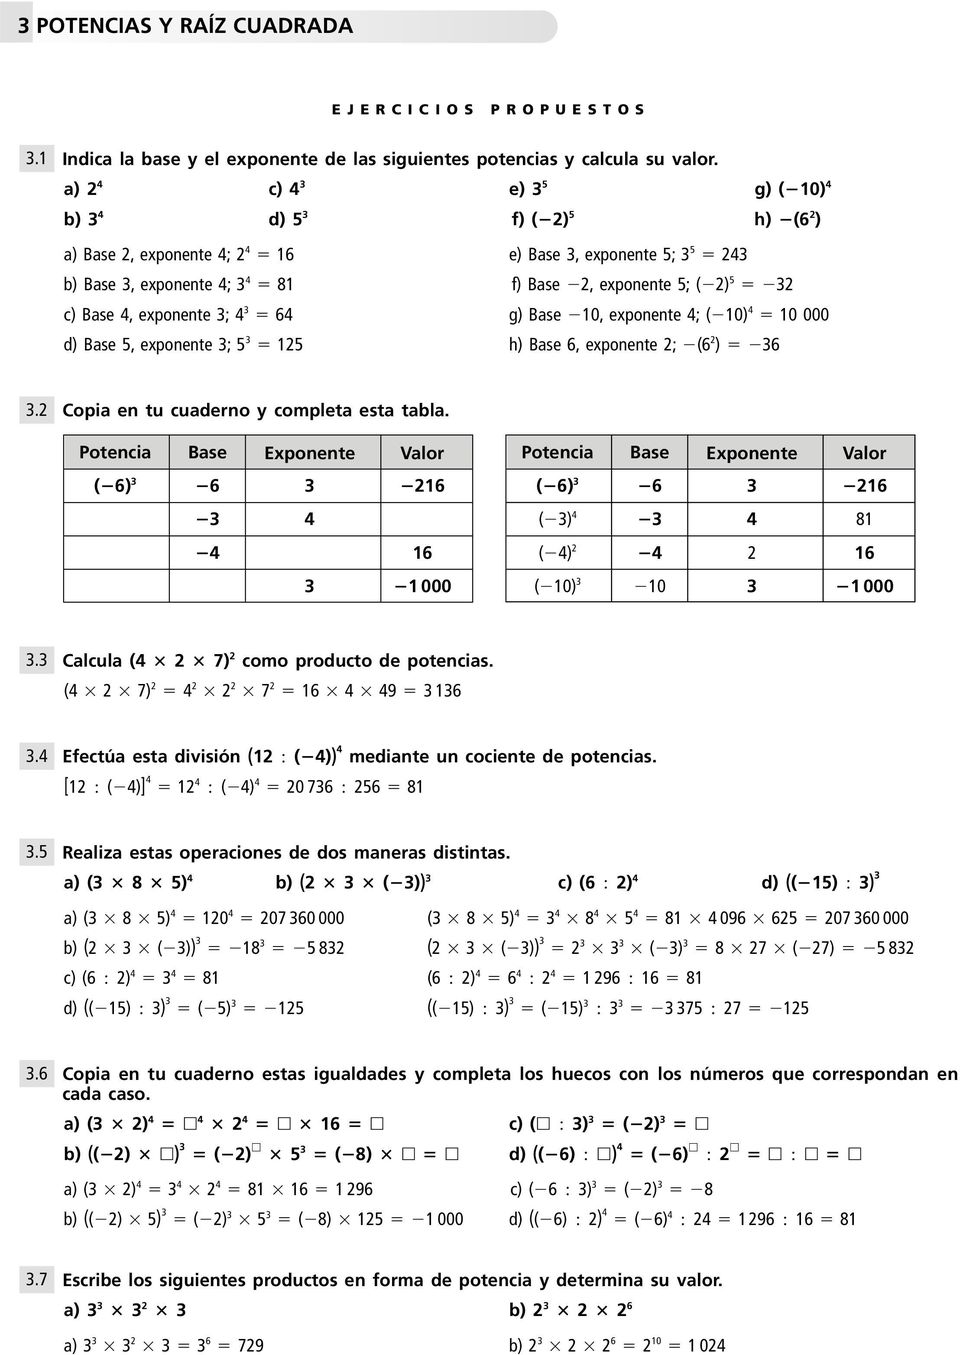 Base 4, exponente 3; 4 3 64 g) Base 10, exponente 4; ( 10) 4 10 000 d) Base 5, exponente 3; 5 3 125 h) Base 6, exponente 2; (6 2 ) 36 3.2 Copia en tu cuaderno y completa esta tabla.